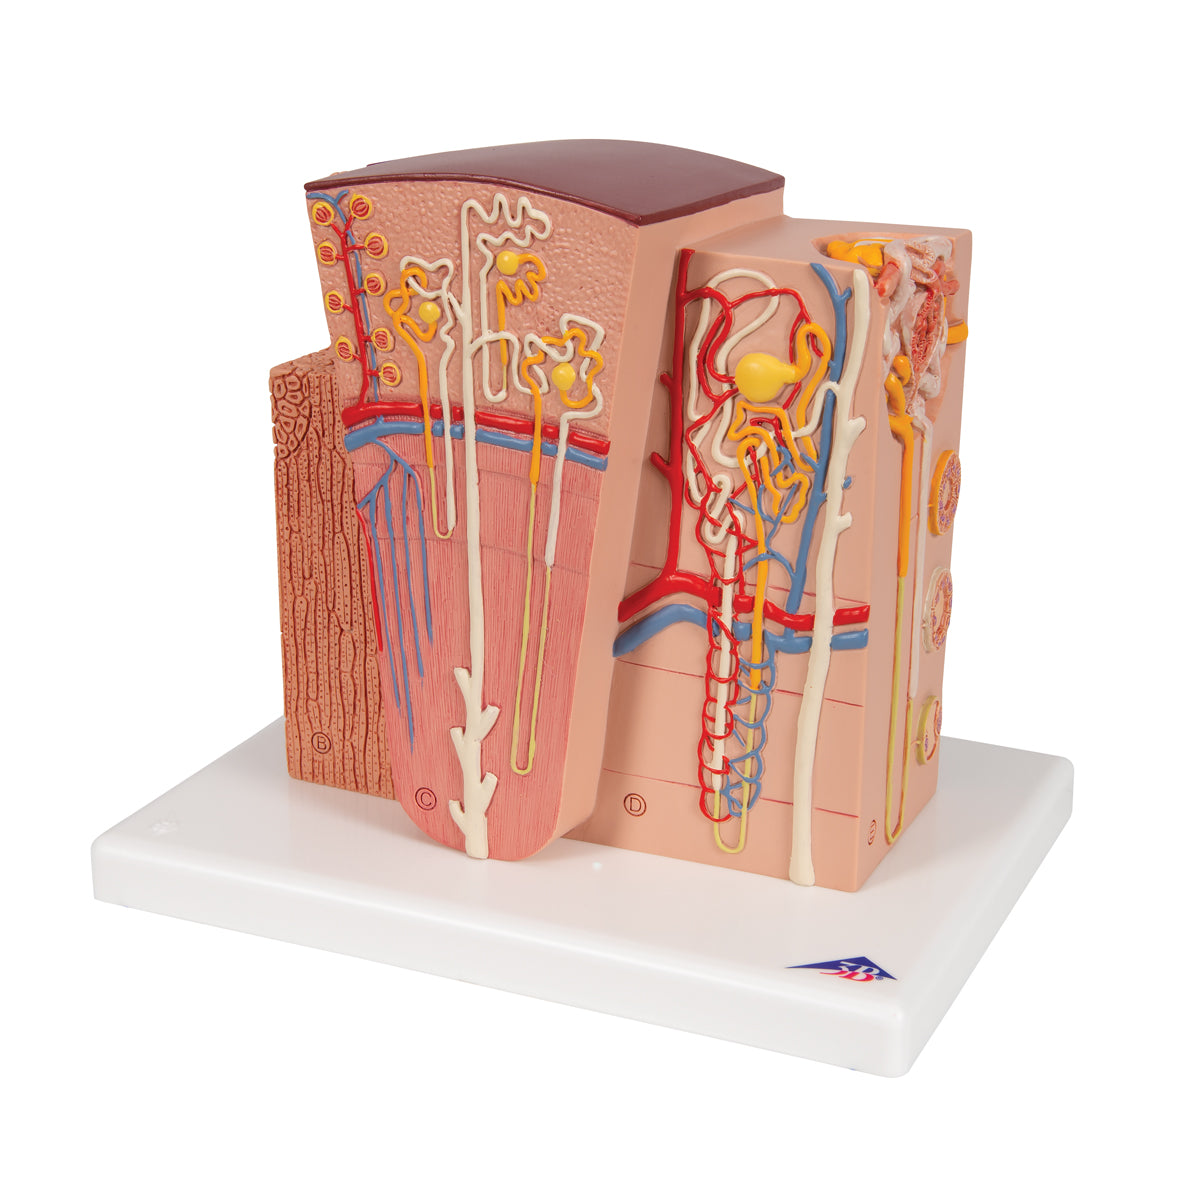 Detaljerad modell av njurens olika vävnader och celler i ett mikroskopiskt perspektiv